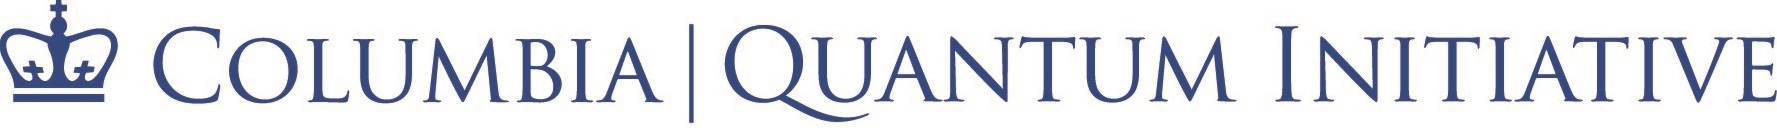 Columbia Quantum Initiative logo